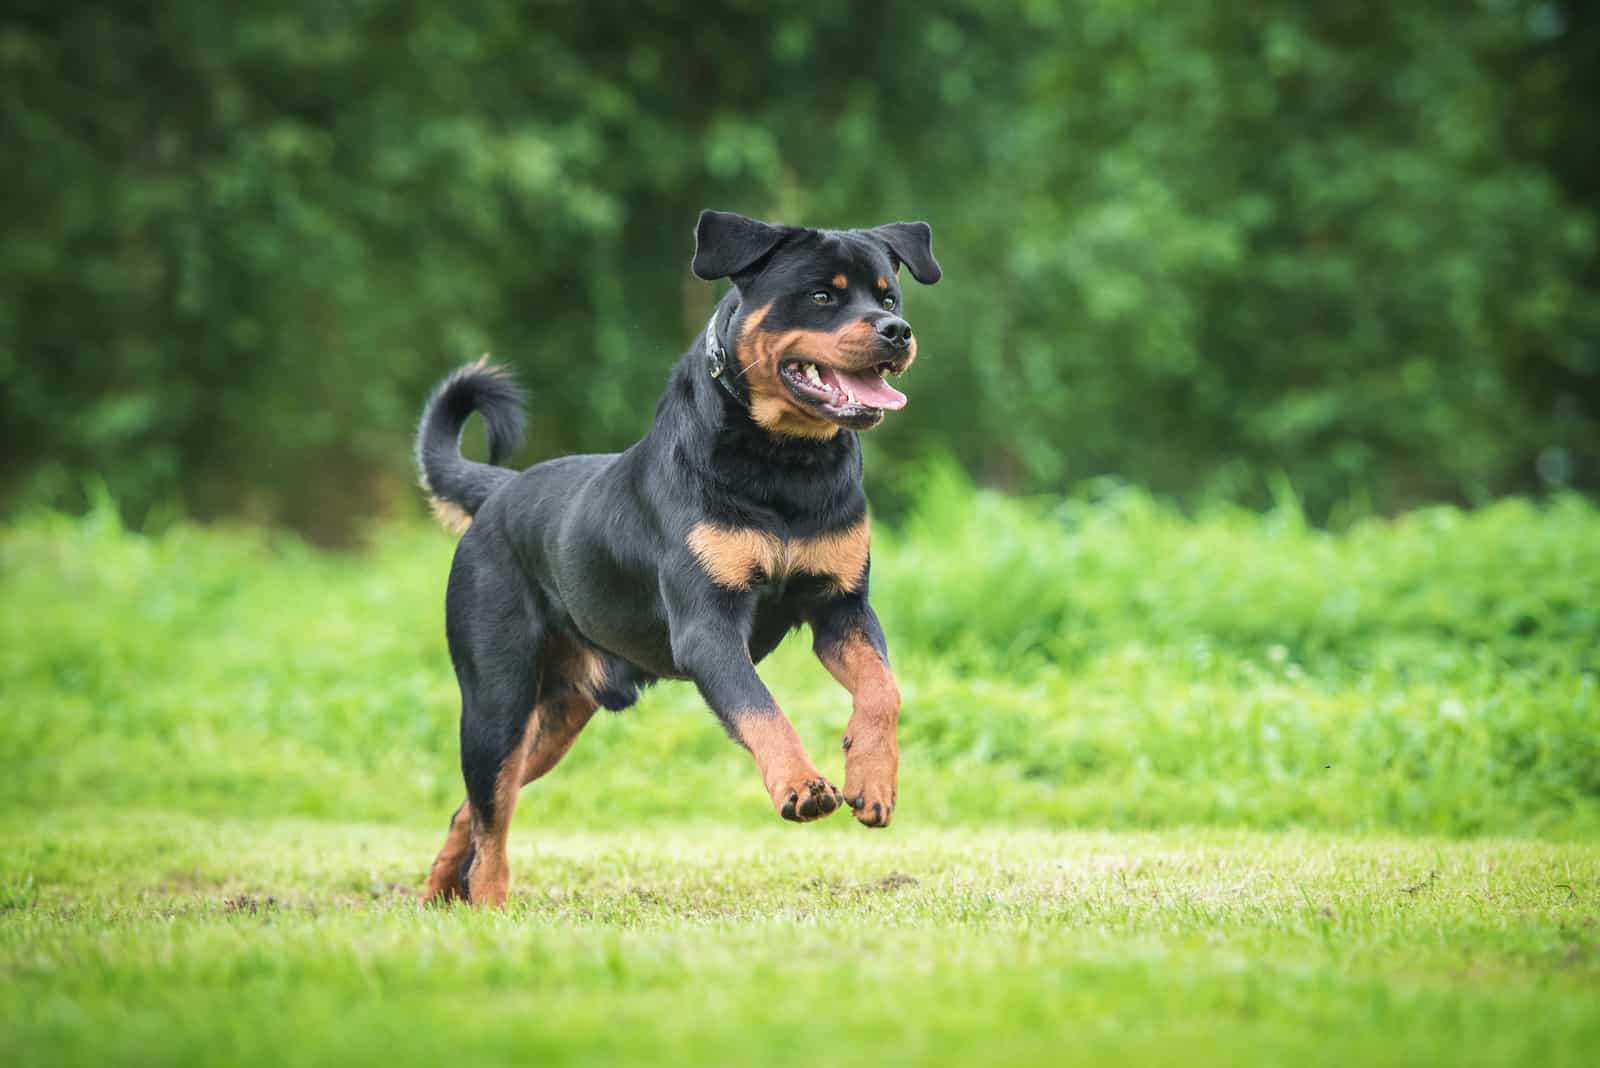 Rottweiler runs across the field